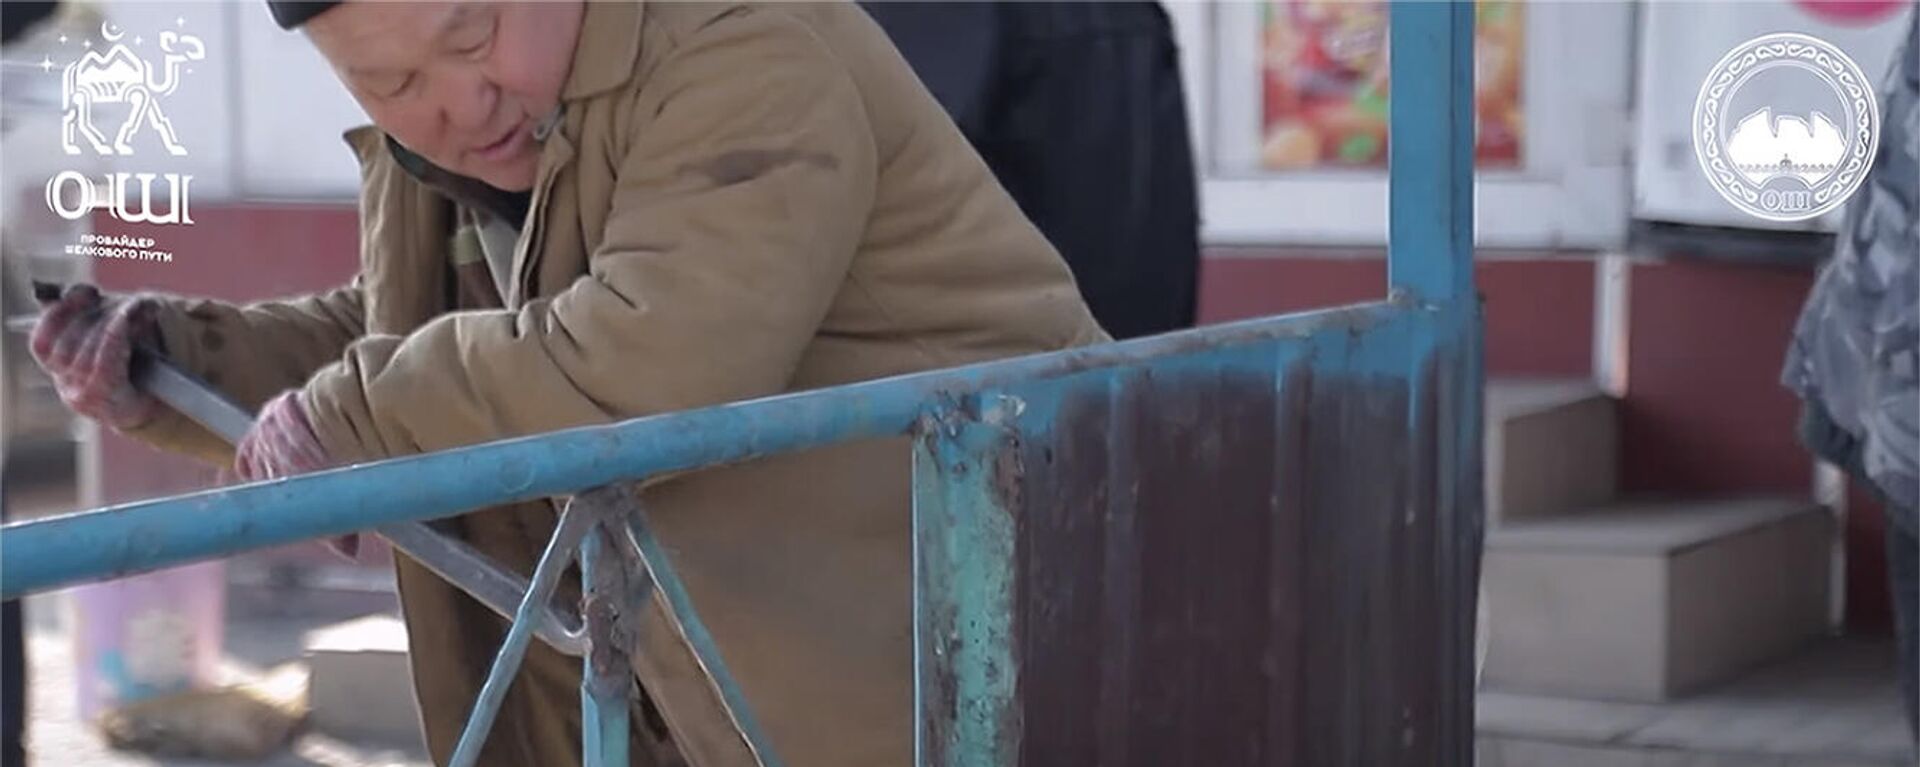 Ошто тротуарды бөгөп калган самсакана, тосмолор алып салынды. Видео - Sputnik Кыргызстан, 1920, 04.02.2022